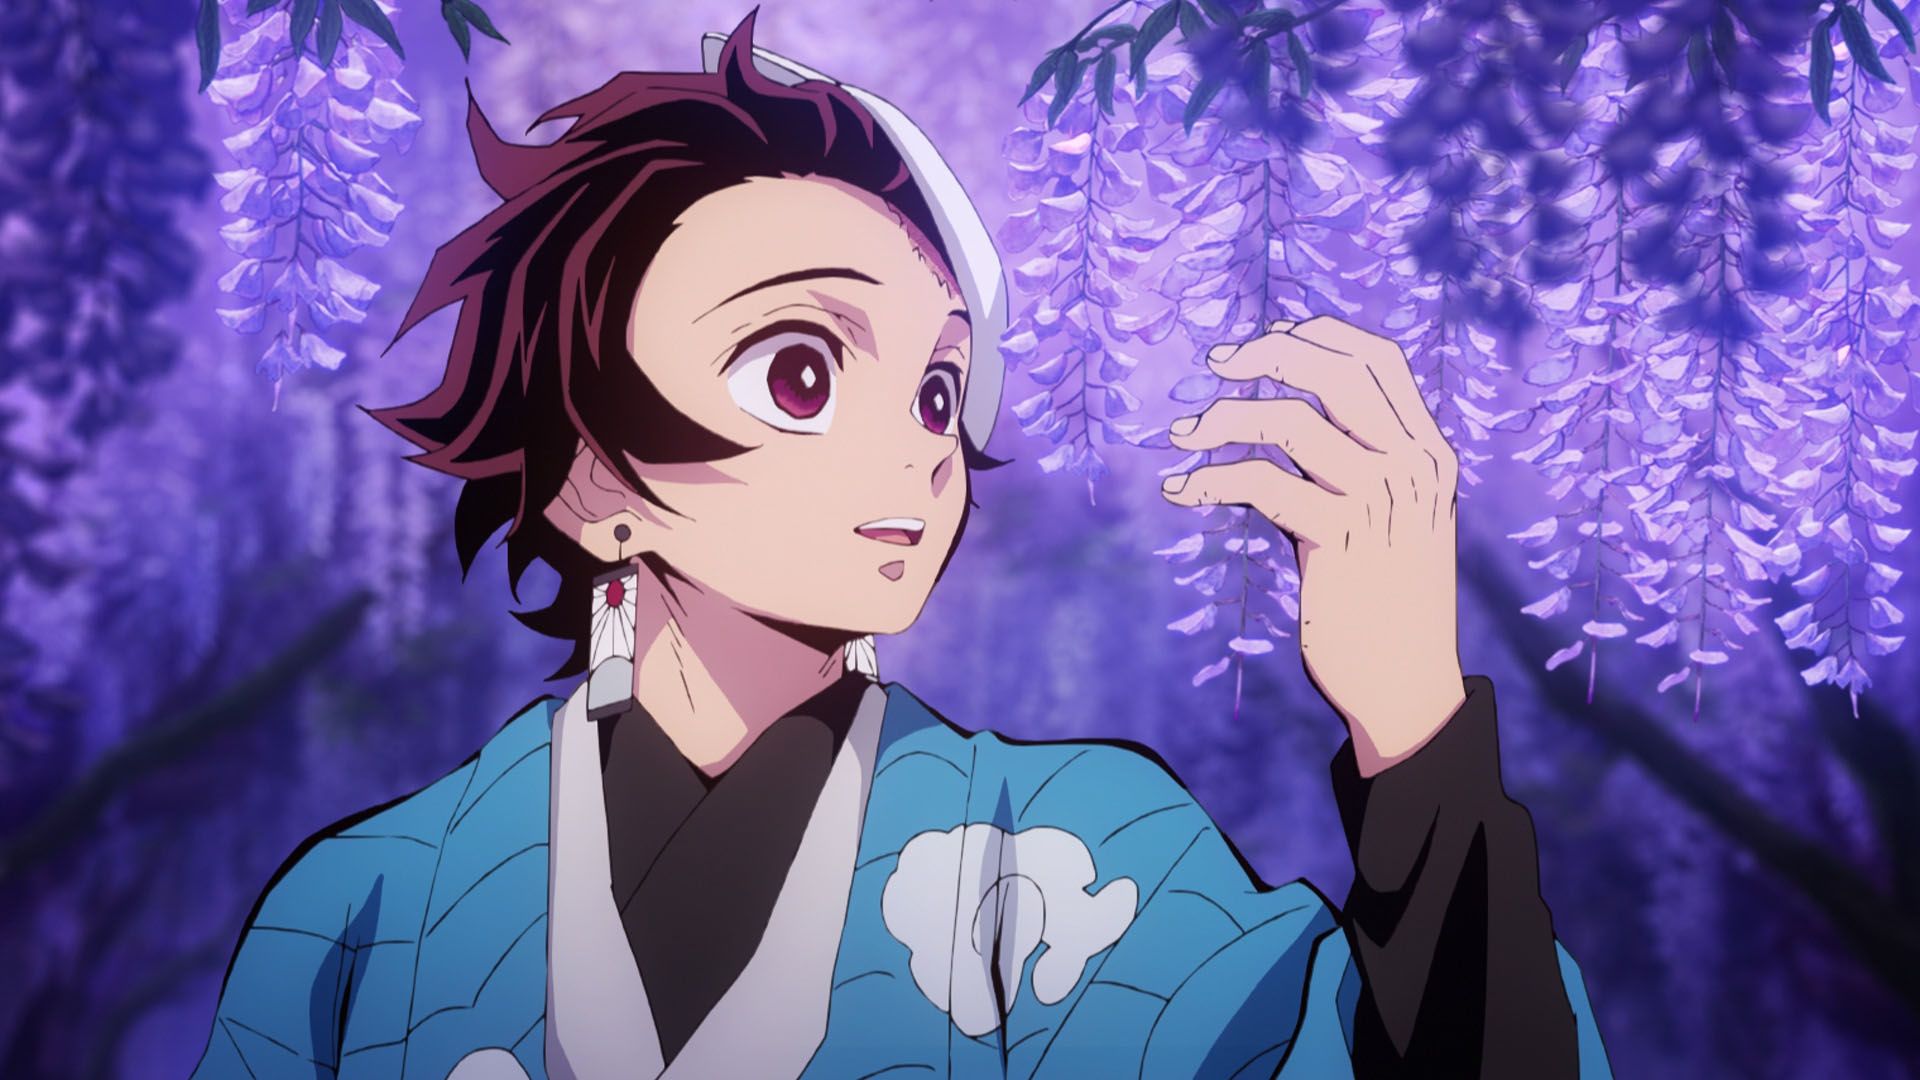 KIMETSU NO YAIBA — EPISODE 1. I've been an avid anime fan for